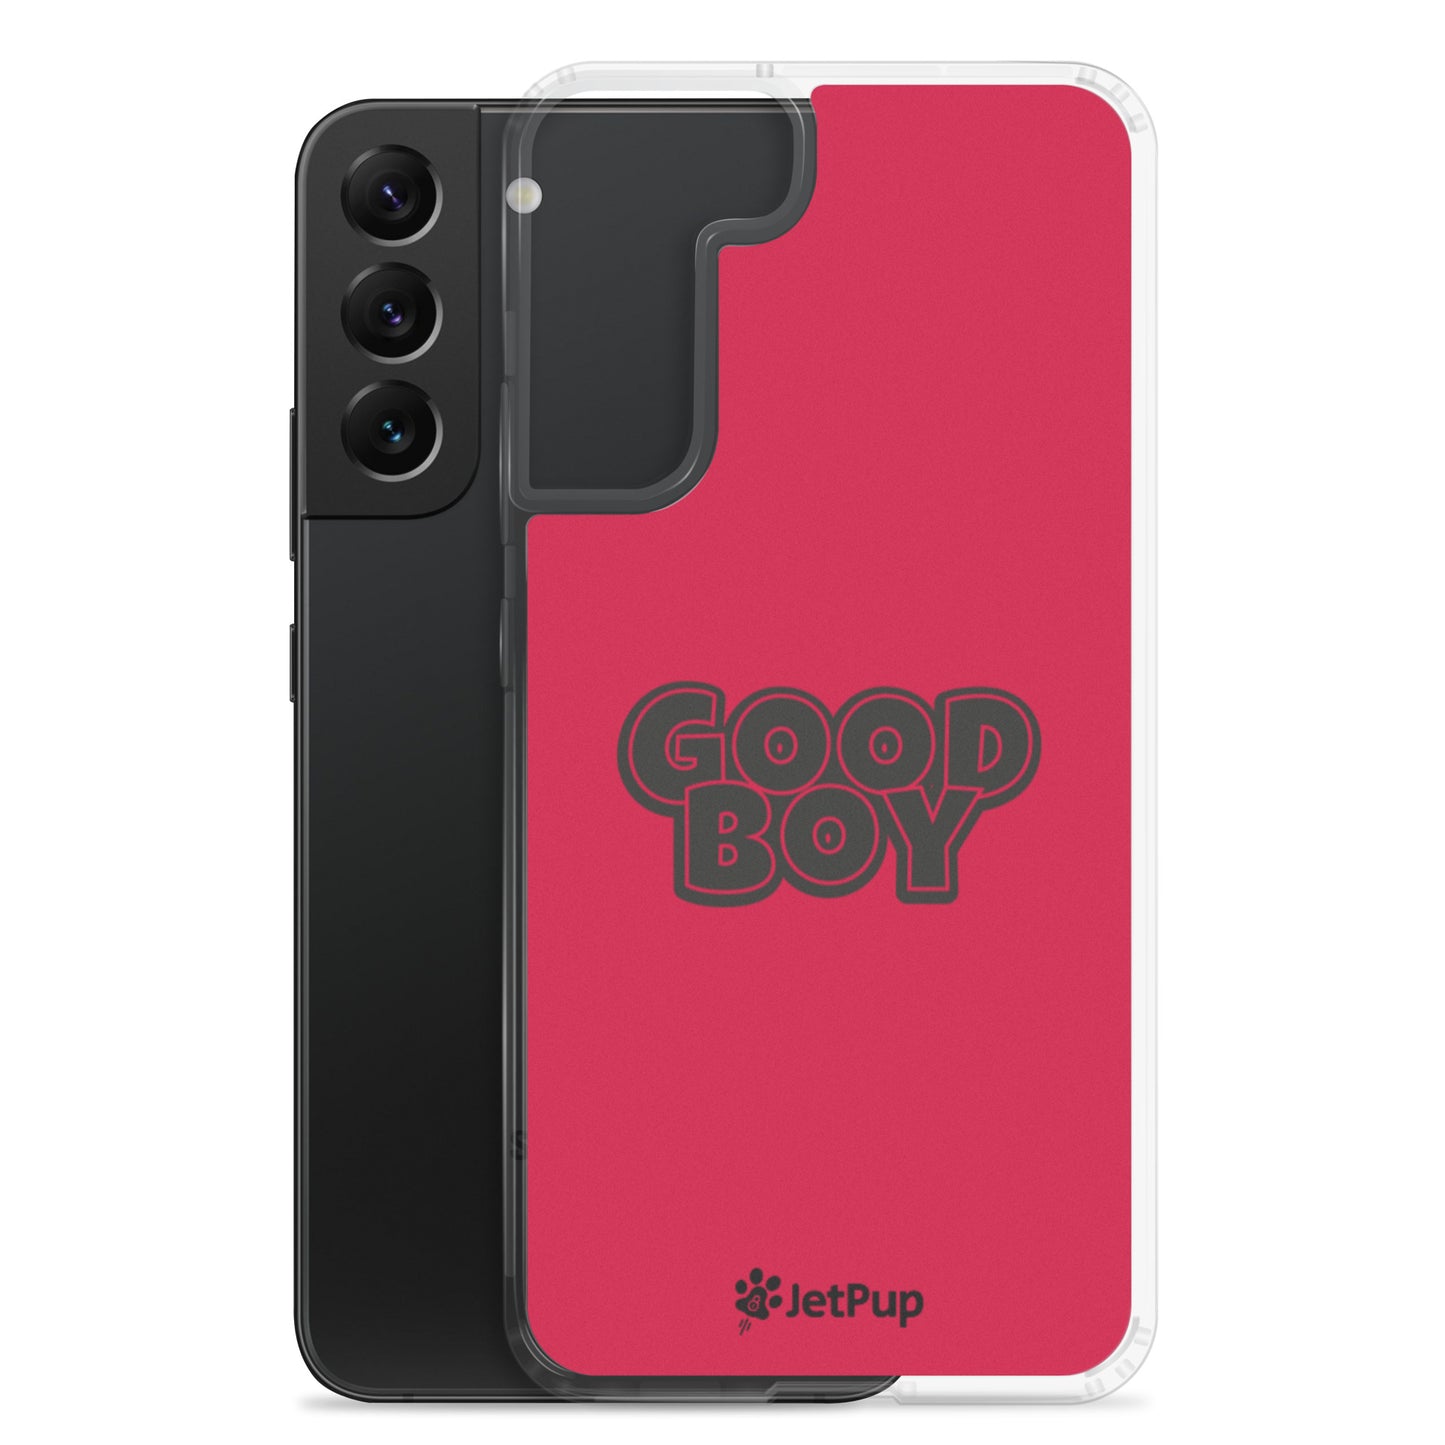 Good Boy Samsung Case - Red